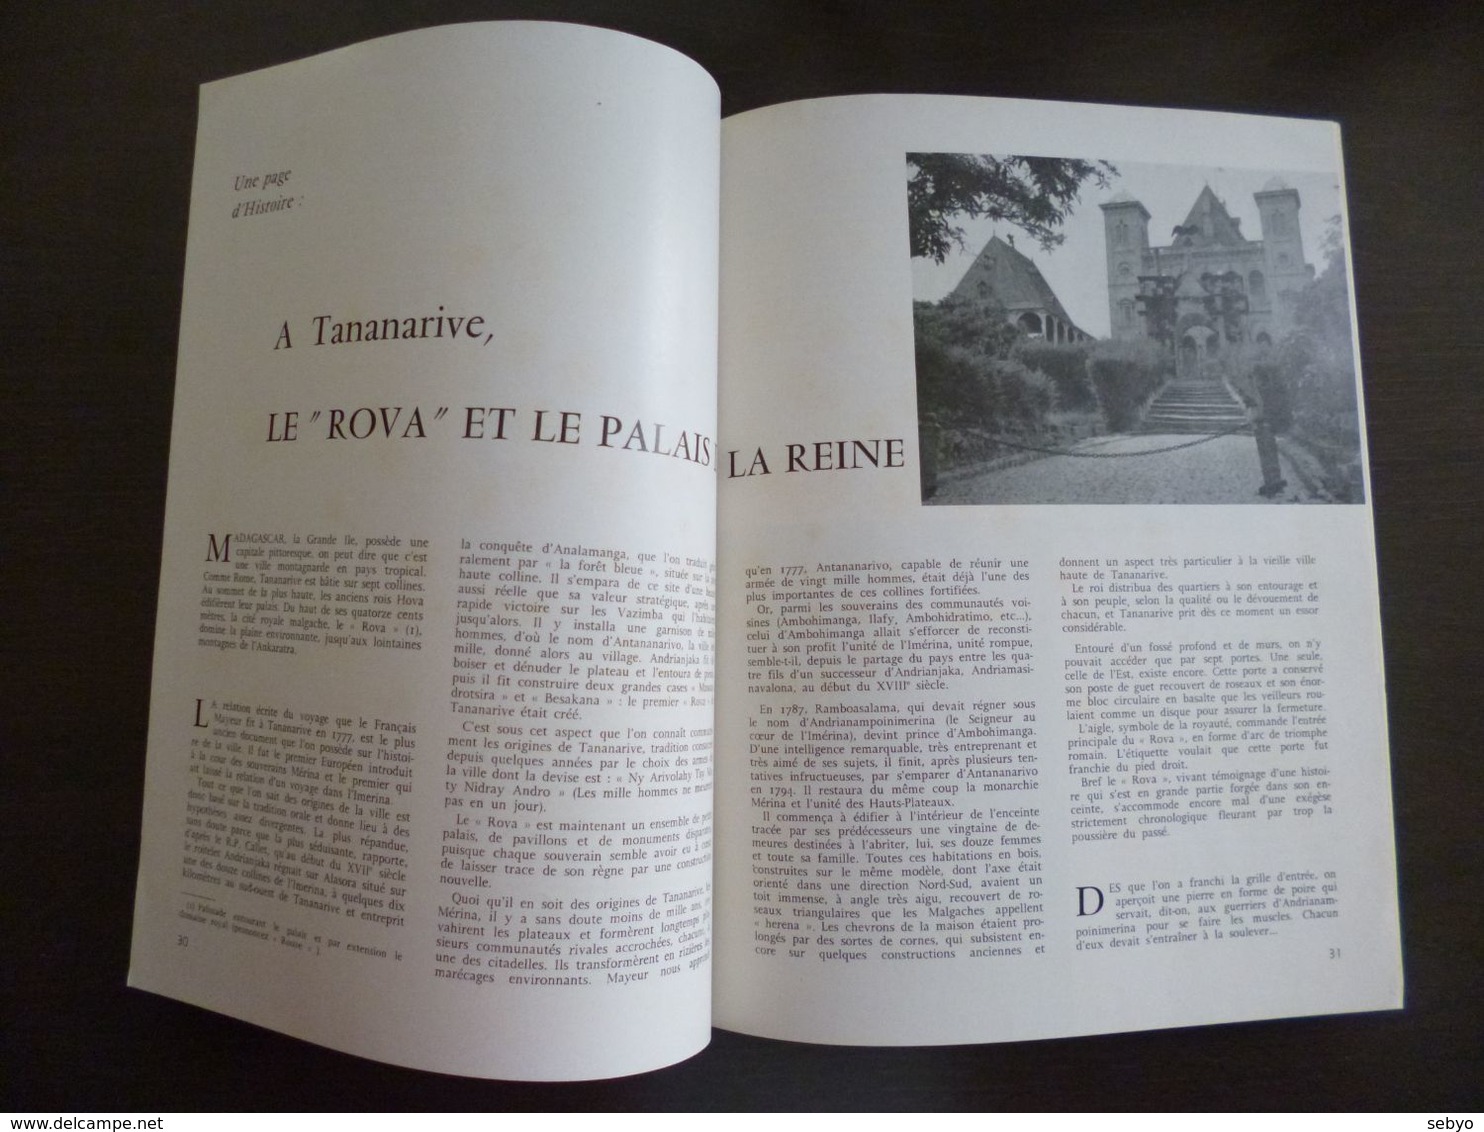 Tropiques. Revue des Troupes d'Outre Mer (Coloniales). Octobre 1959.